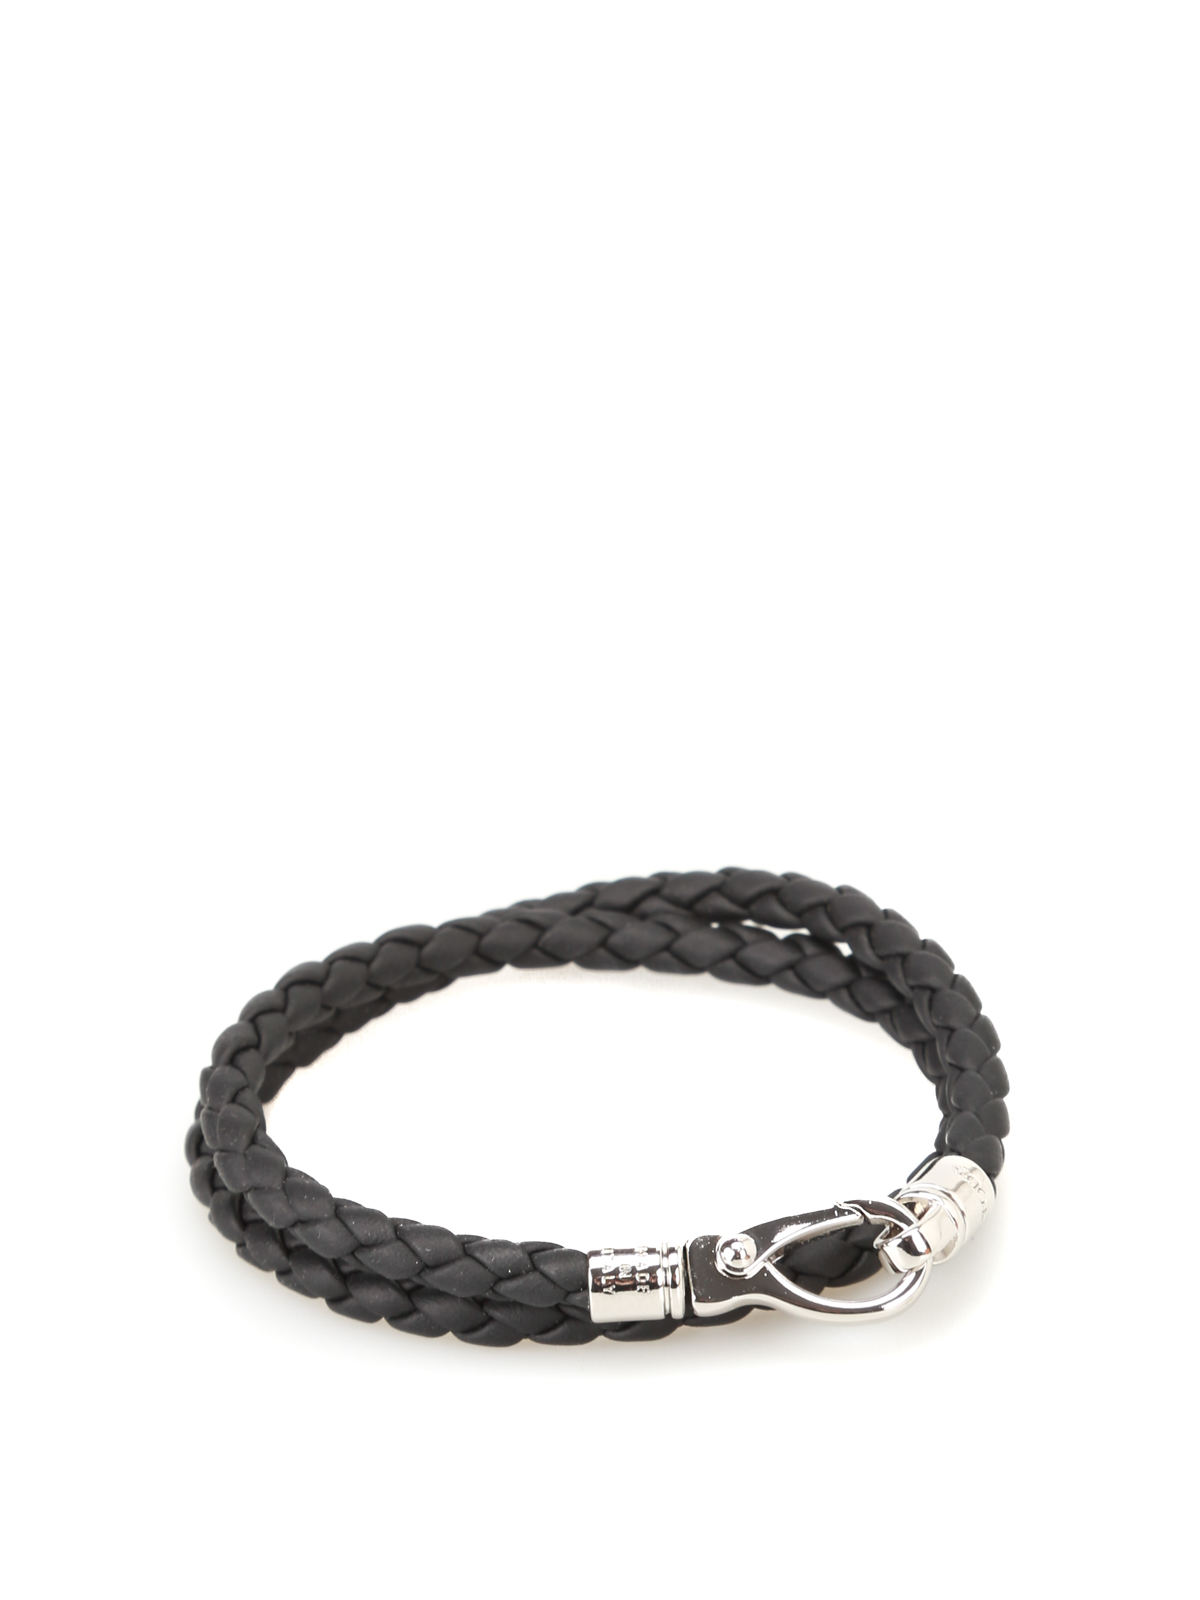 Bracelets & Bangles Tod'S - MyColors black leather bracelet ...